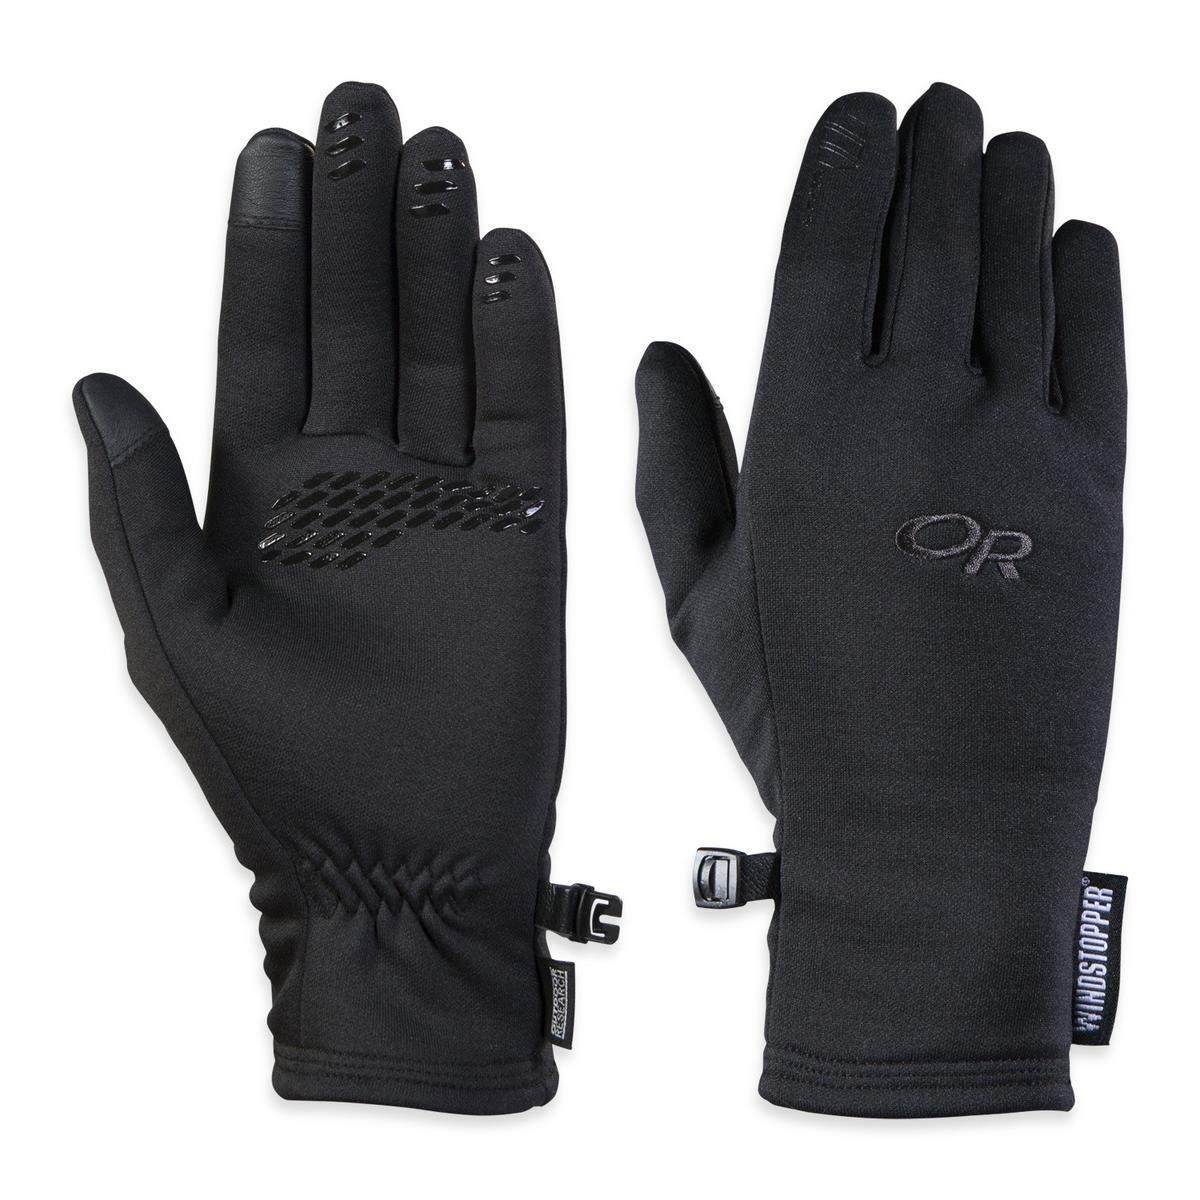 Research Women's Handschuhe Outdoor Backstop Senso Research Outdoor Multisporthandschuhe